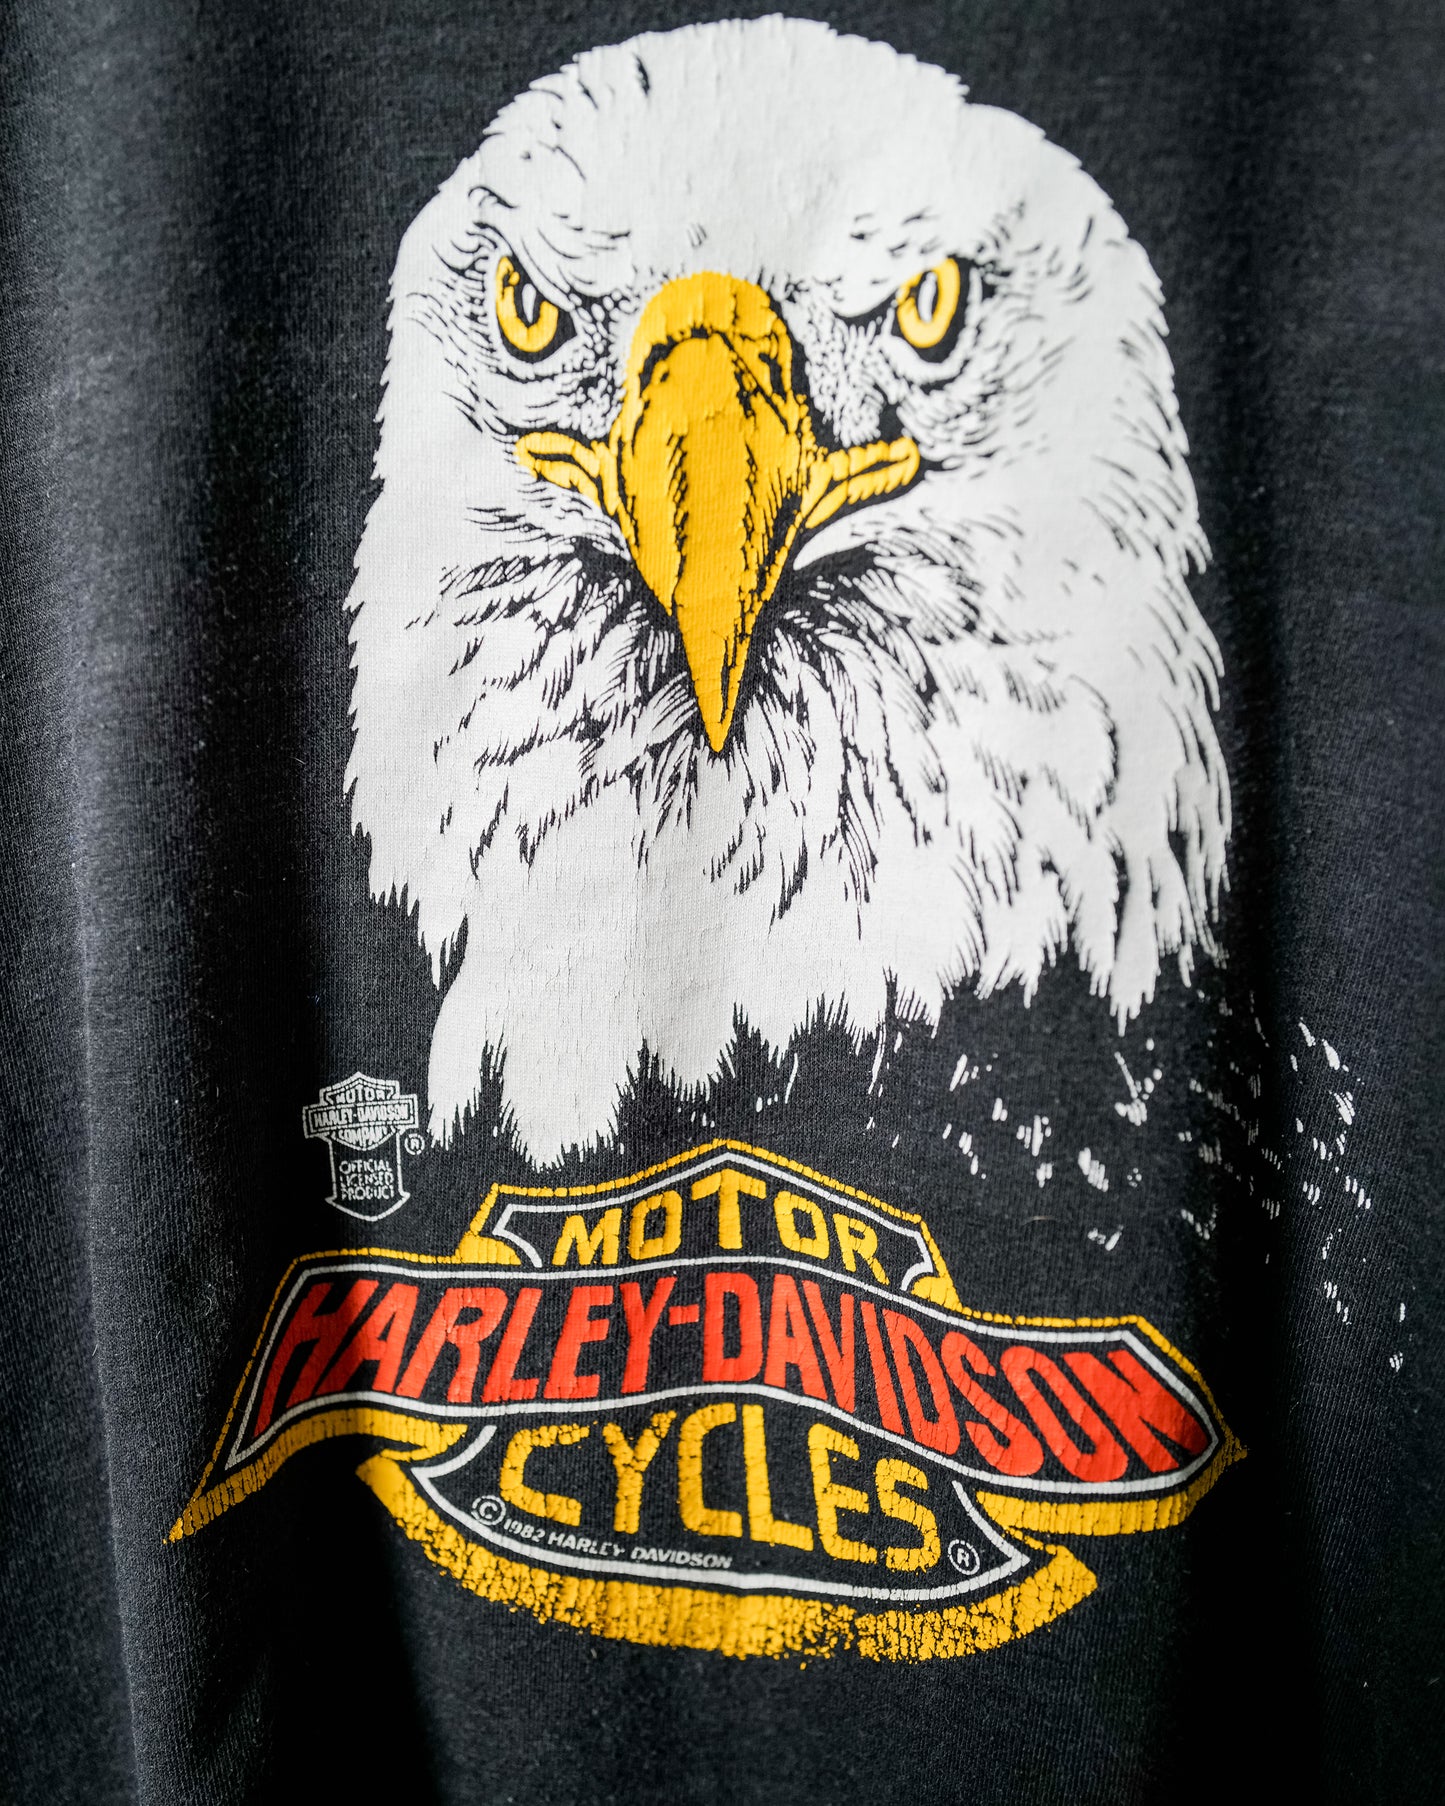 Vintage Rare 1982 "Sick Rick" Harley Davidson Shirt - Size Medium